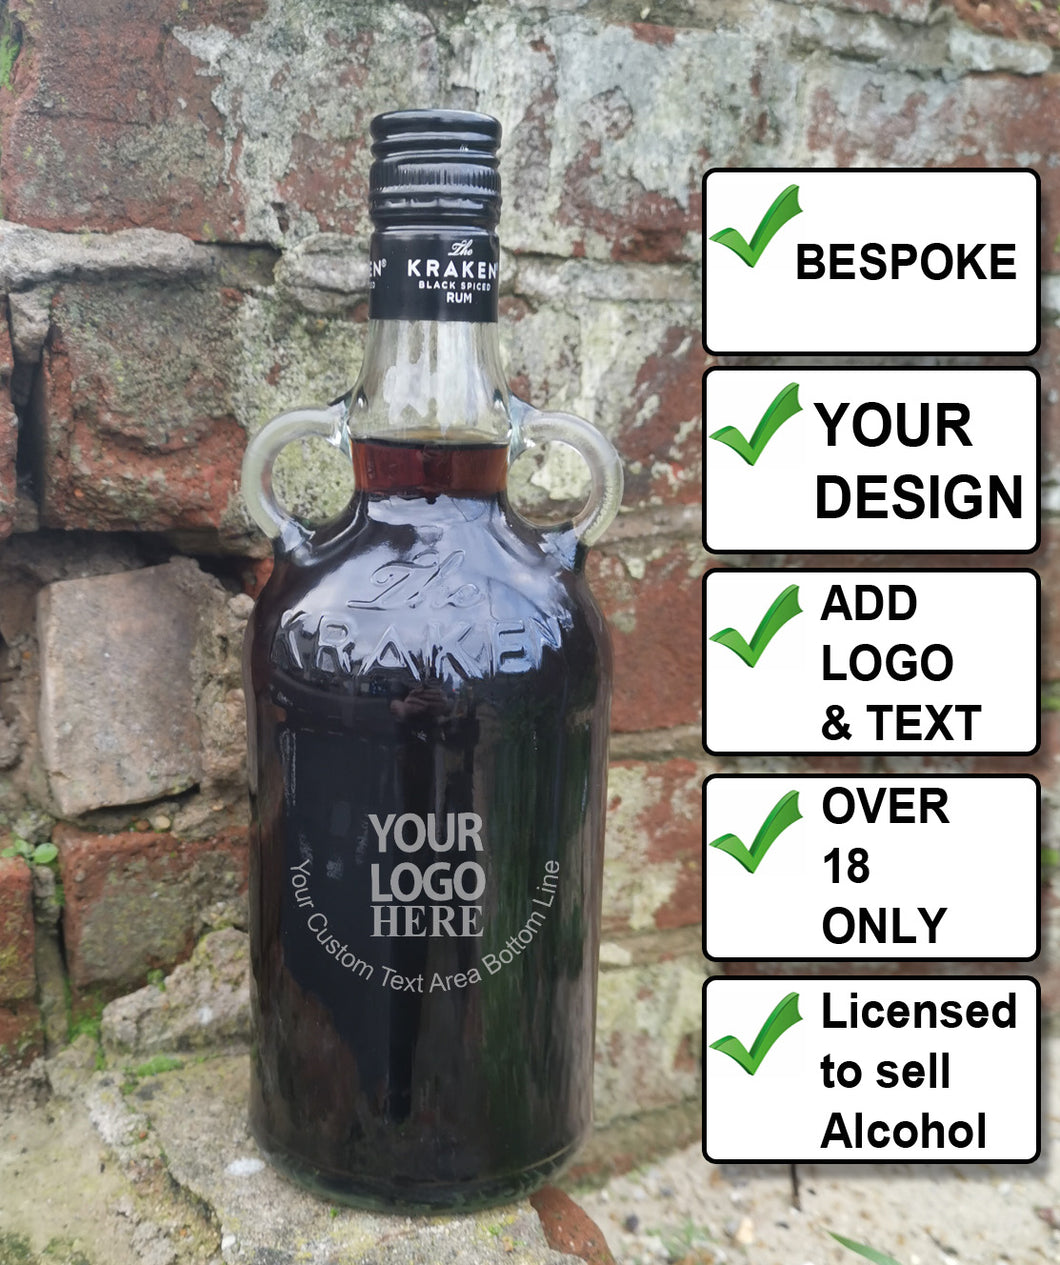 Engraved Bottle of Kraken - Black Spiced Rum 70cl - Upload your own design